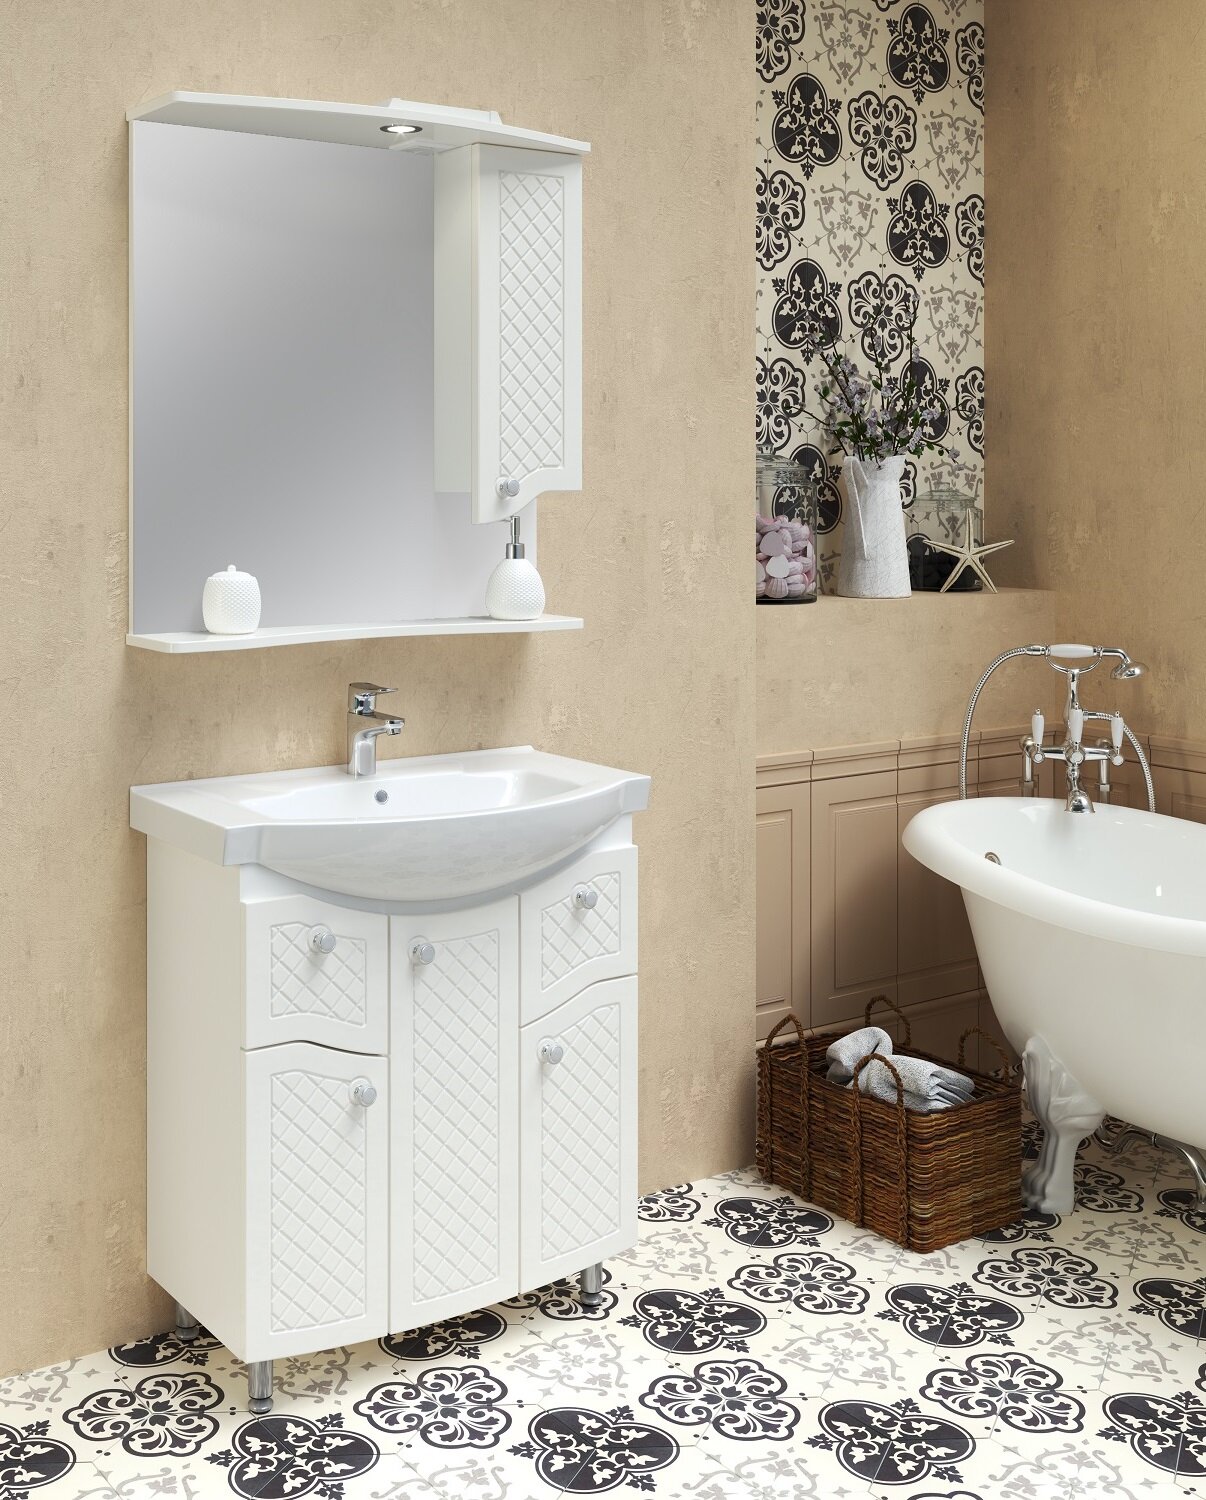 Мебель для ванной / Runo / Милано 75 / тумба с раковиной Элеганс 75 / шкаф для ванной / зеркало для ванной